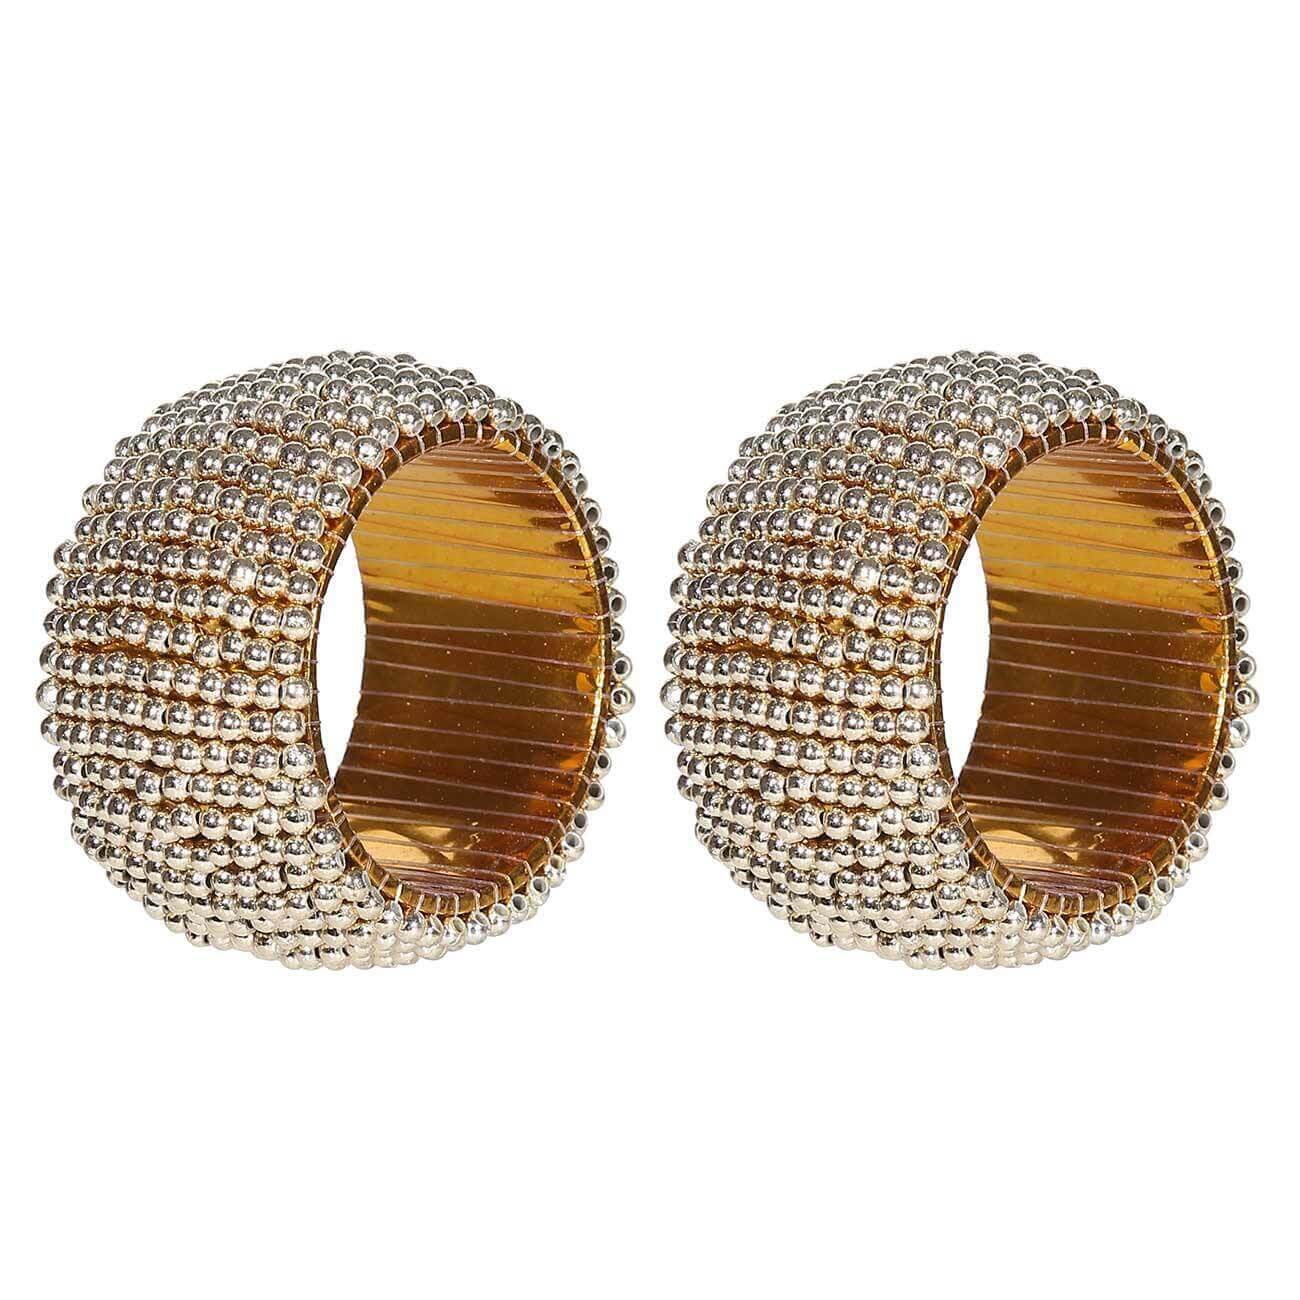 Кольцо для салфеток, 5 см, 2 шт, бисер, круглое, золотистое, Shiny beads изображение № 1